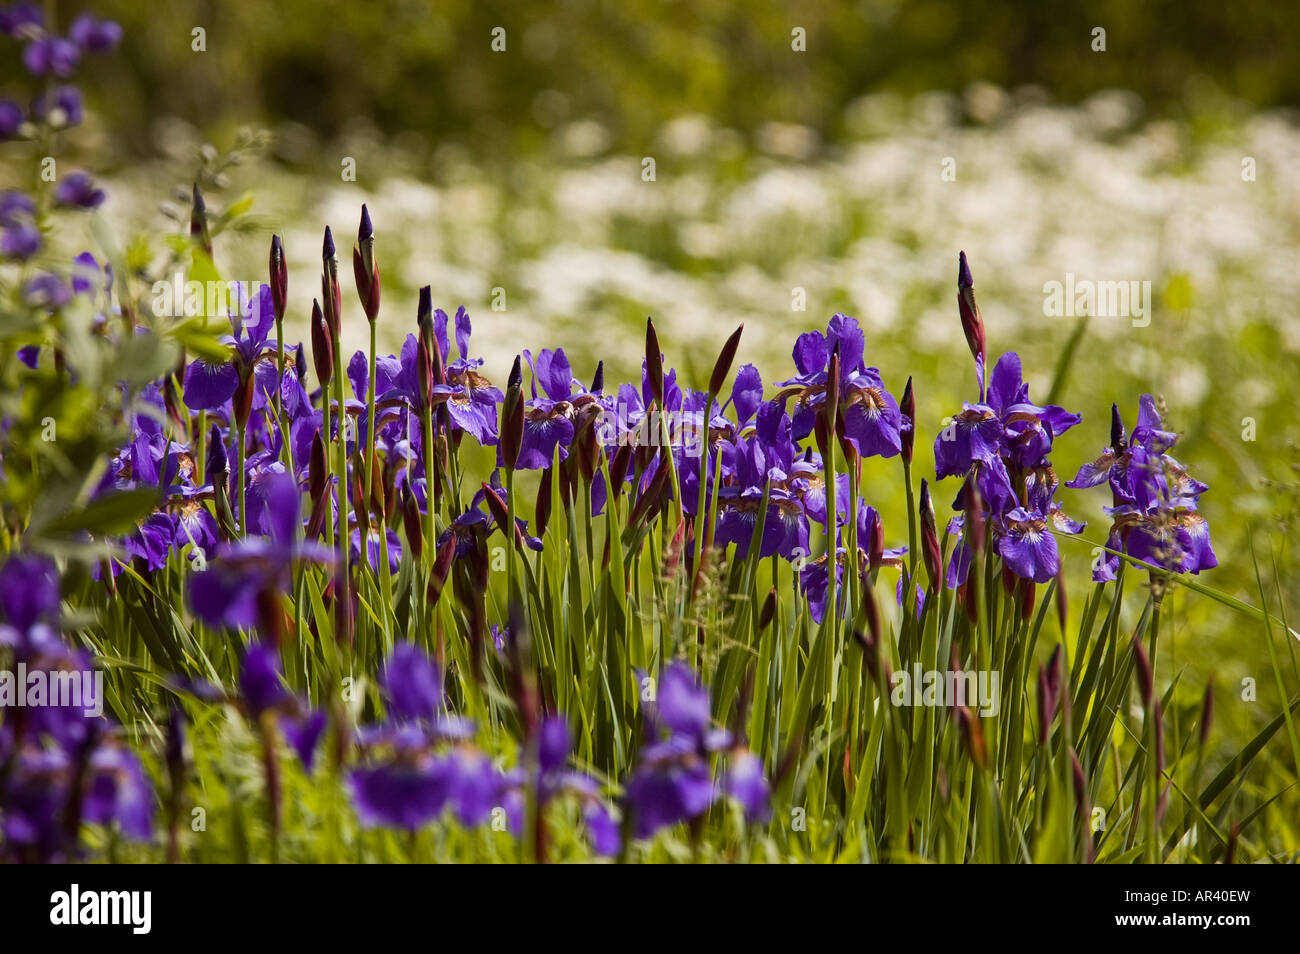 Purple iris flowers in field Stock Photo